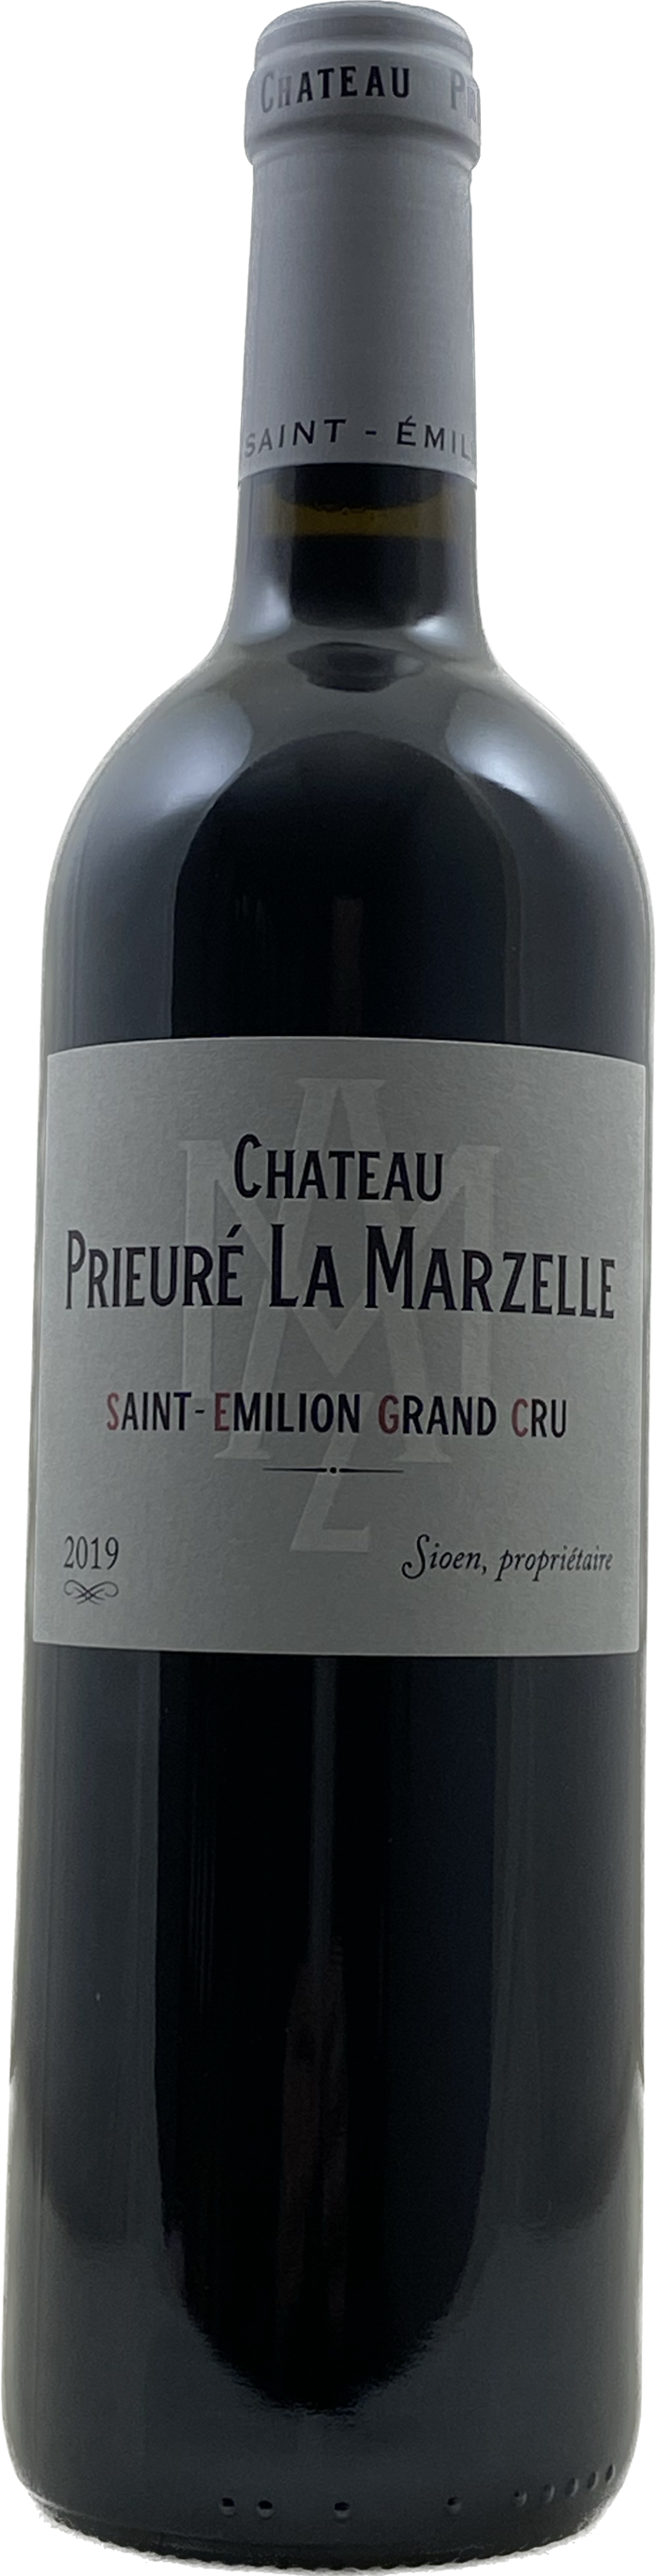 Prieuré La Marzelle - Château La Marzelle 2019